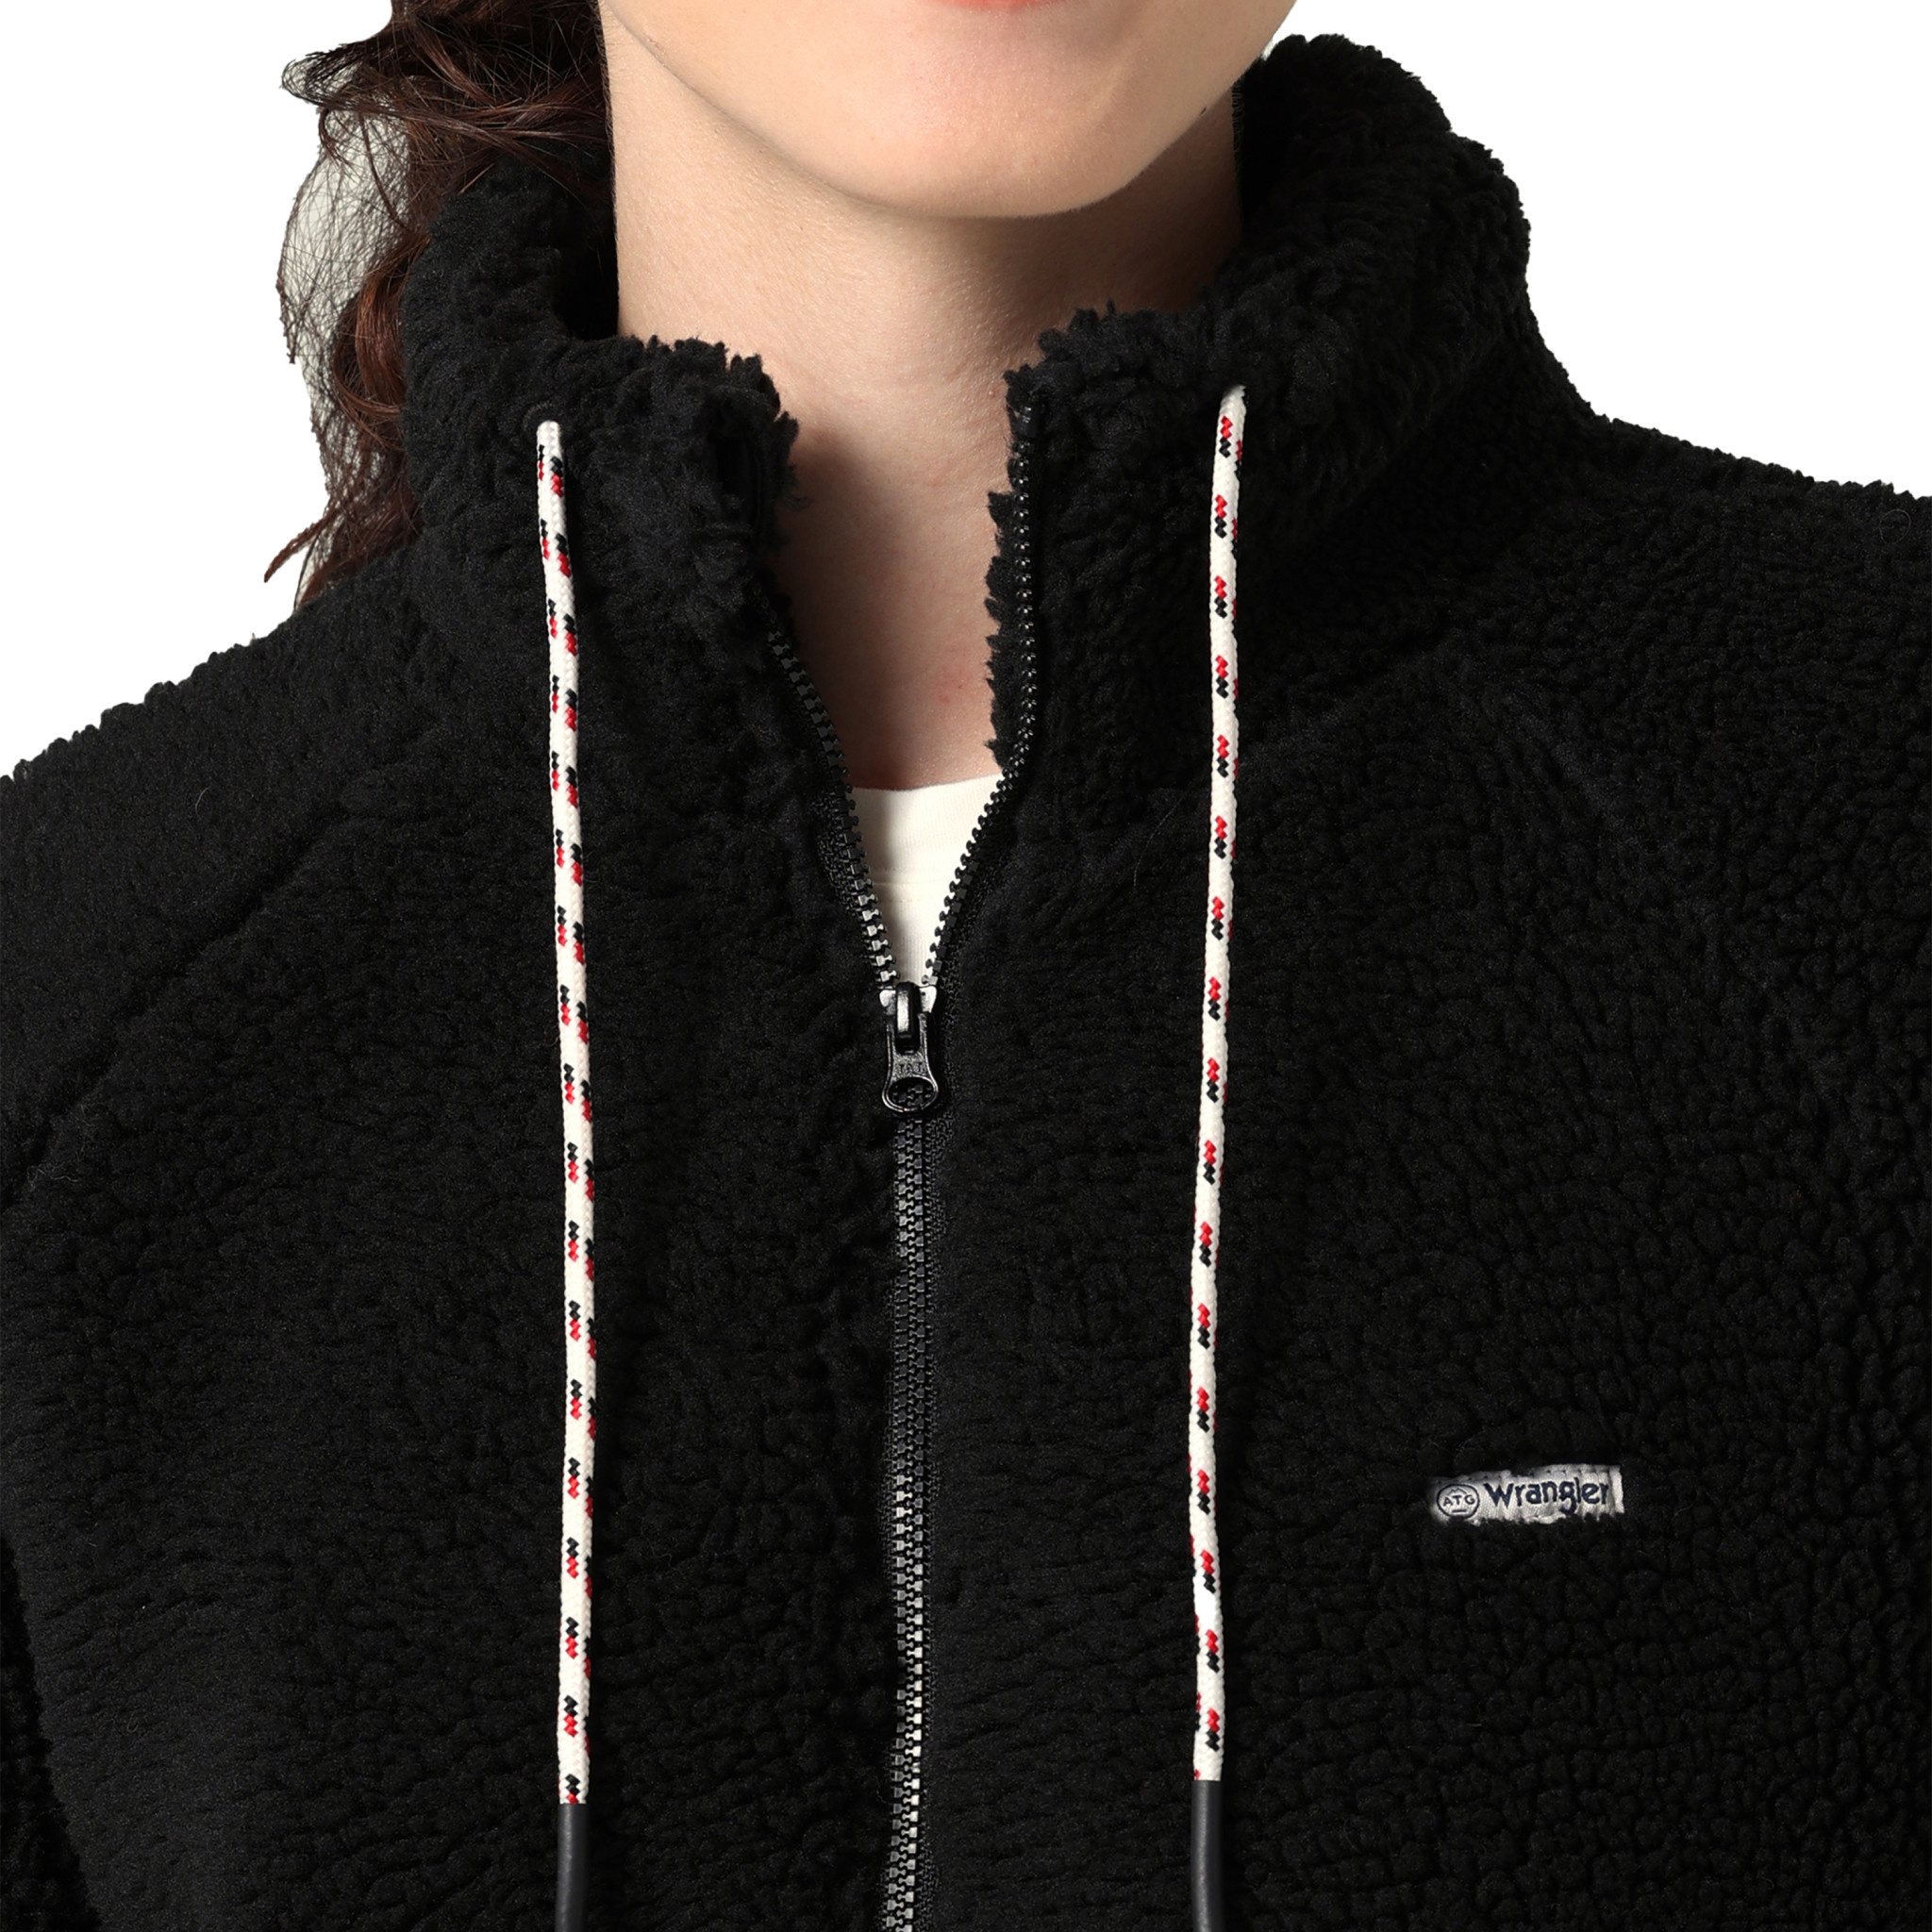 Wrangler ATG Womens Sherpa Fleece Jacket Black - Frontier Western Shop